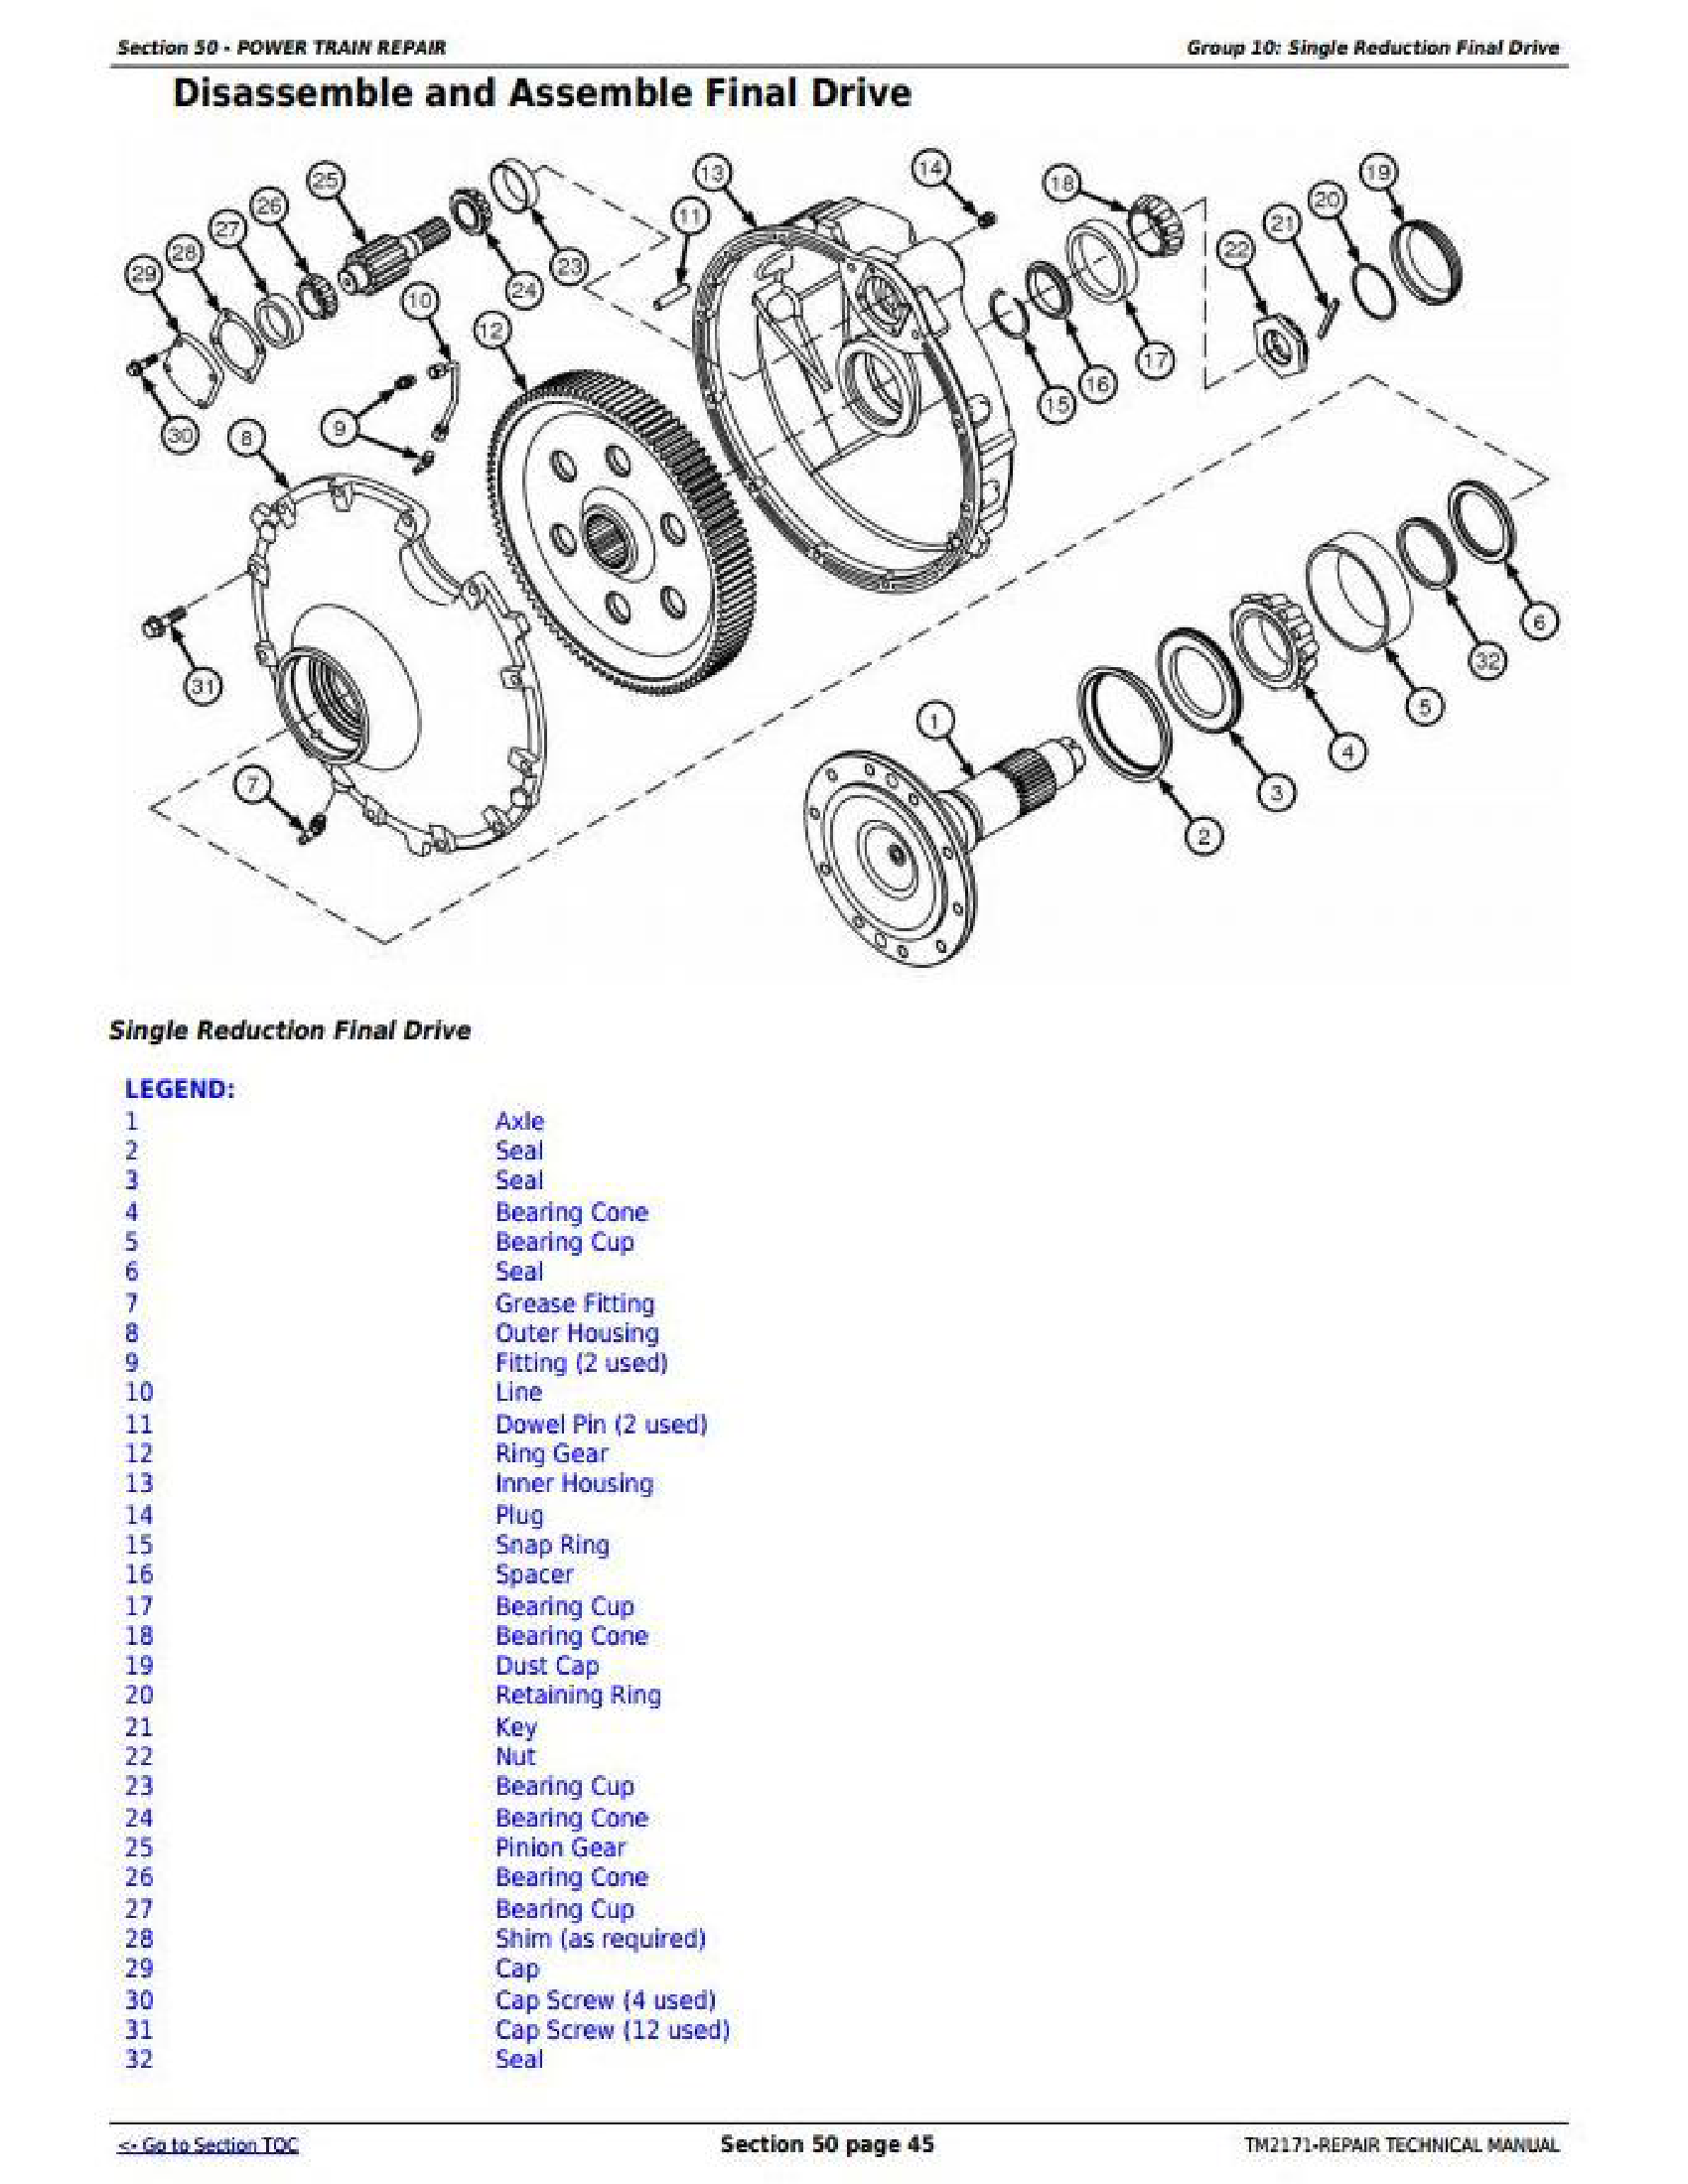 John Deere 6170M manual pdf